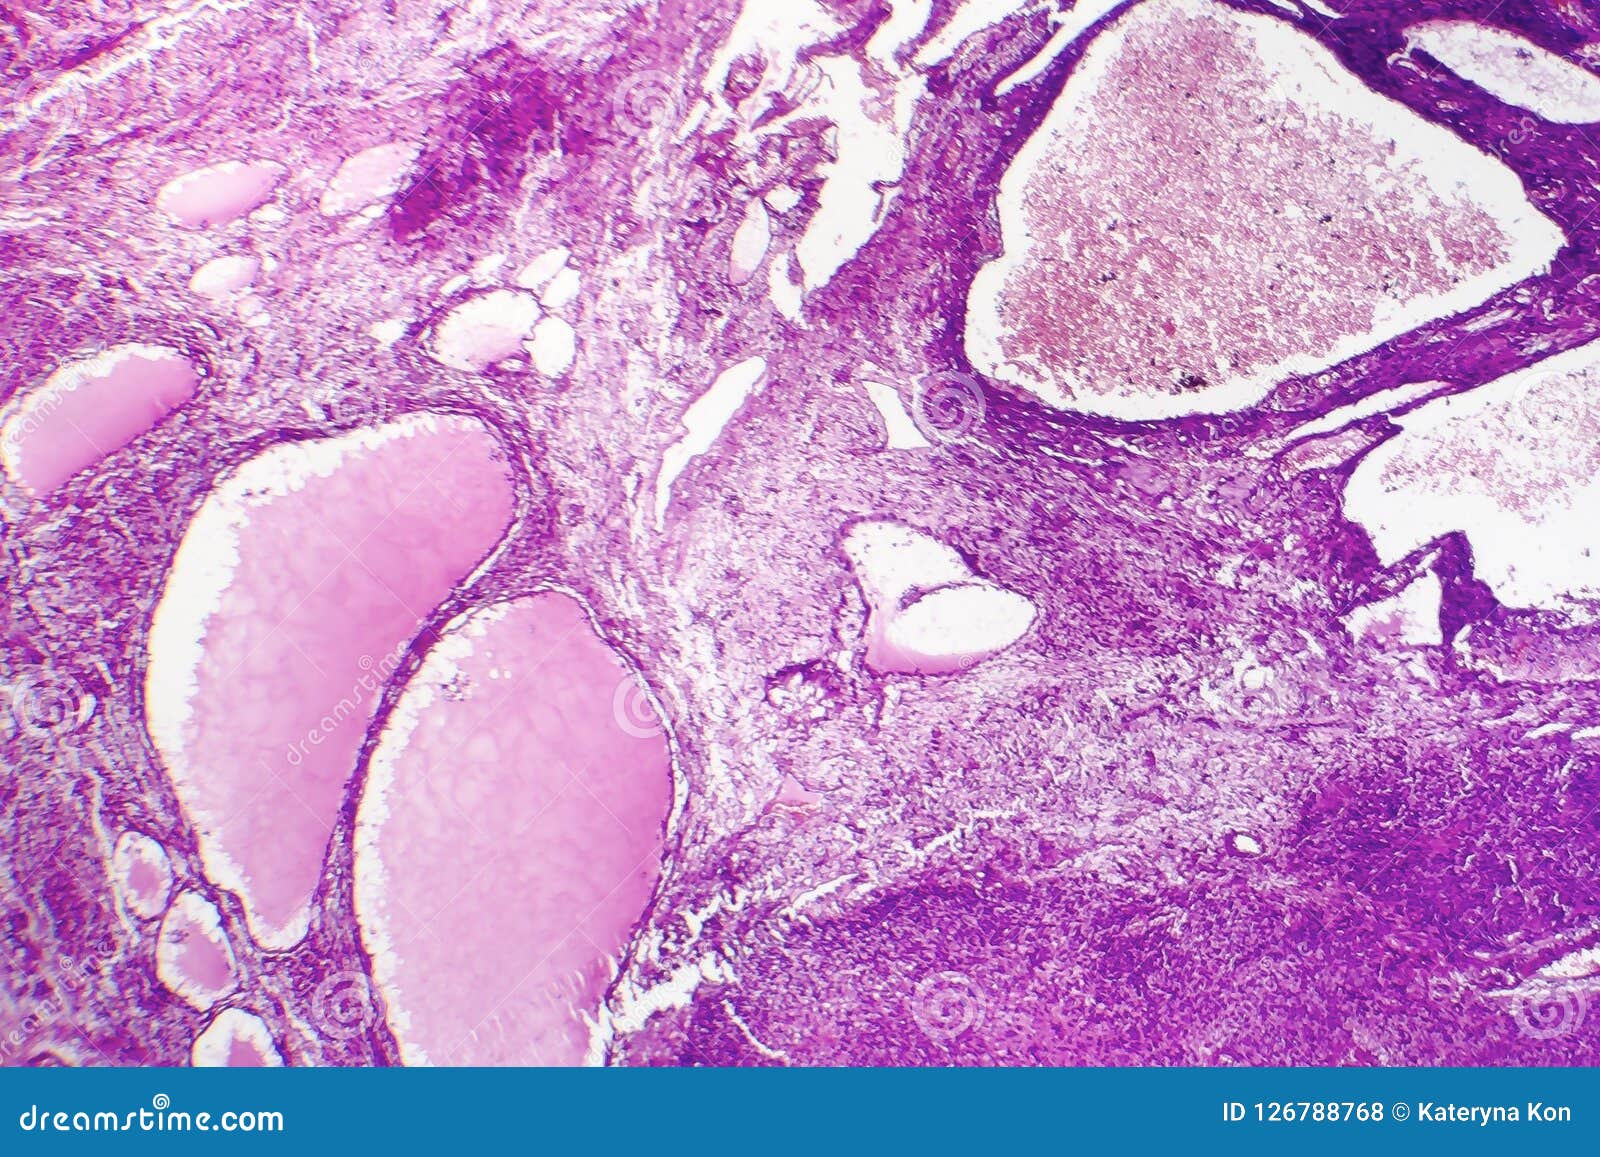 fibrosarcoma, malignant tumor of fibroblasts